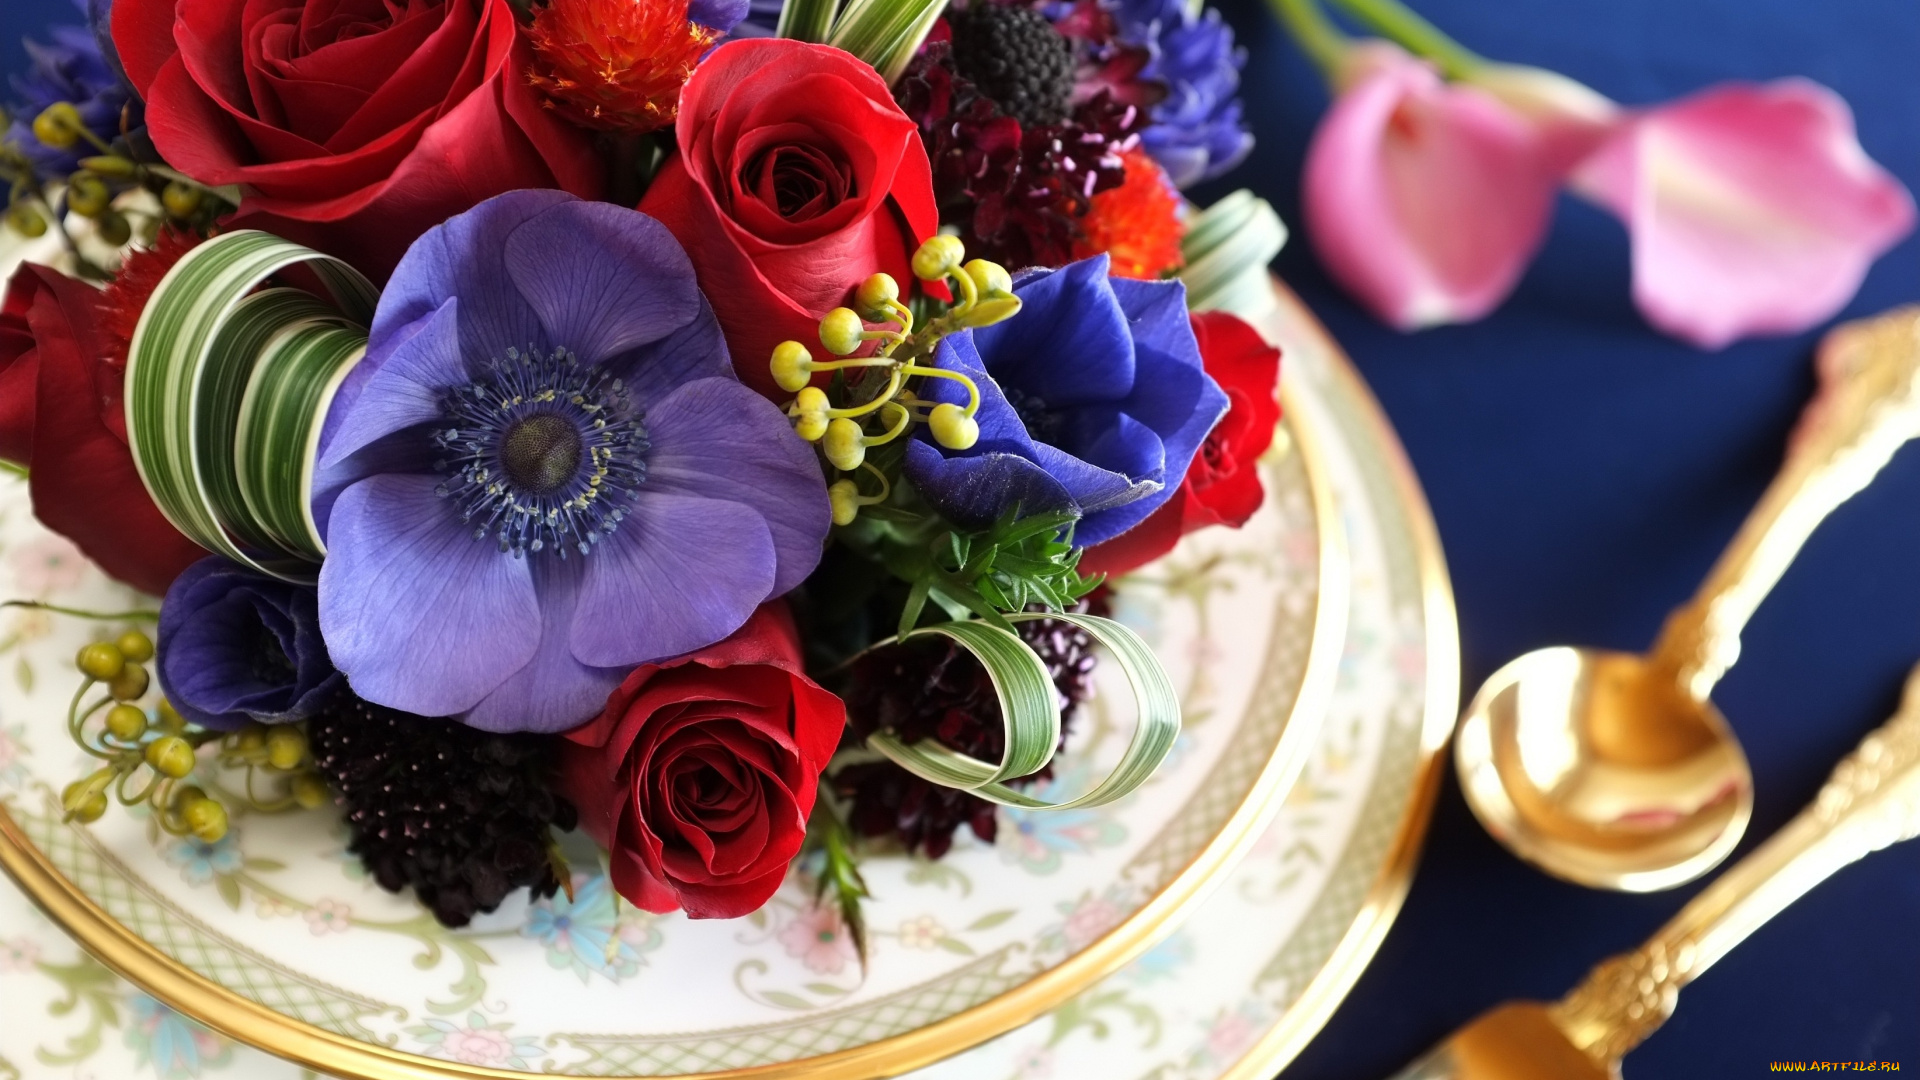 цветы, букеты, композиции, вилка, ложка, розы, тарелки, анемон